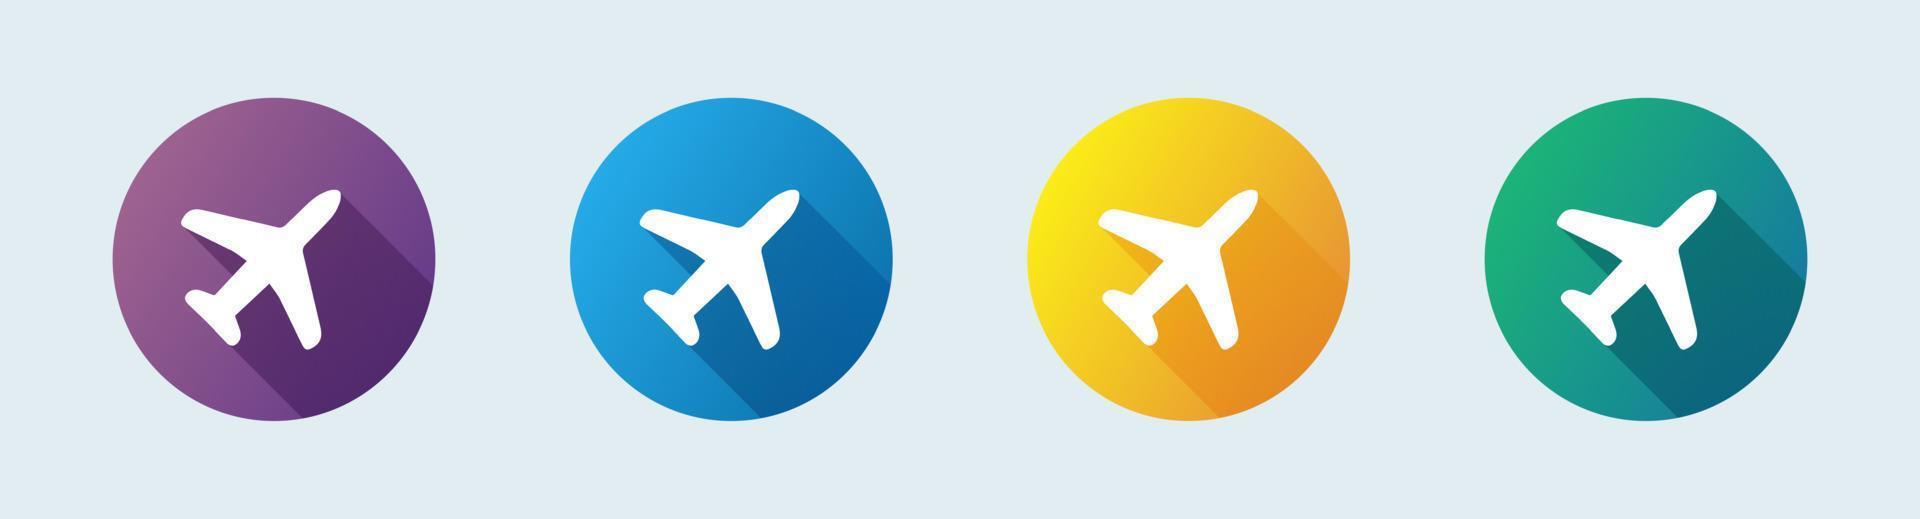 Flache Ikone der Flugzeugluftfahrt für Apps und Websites. Reise-Vektor-Illustration. vektor